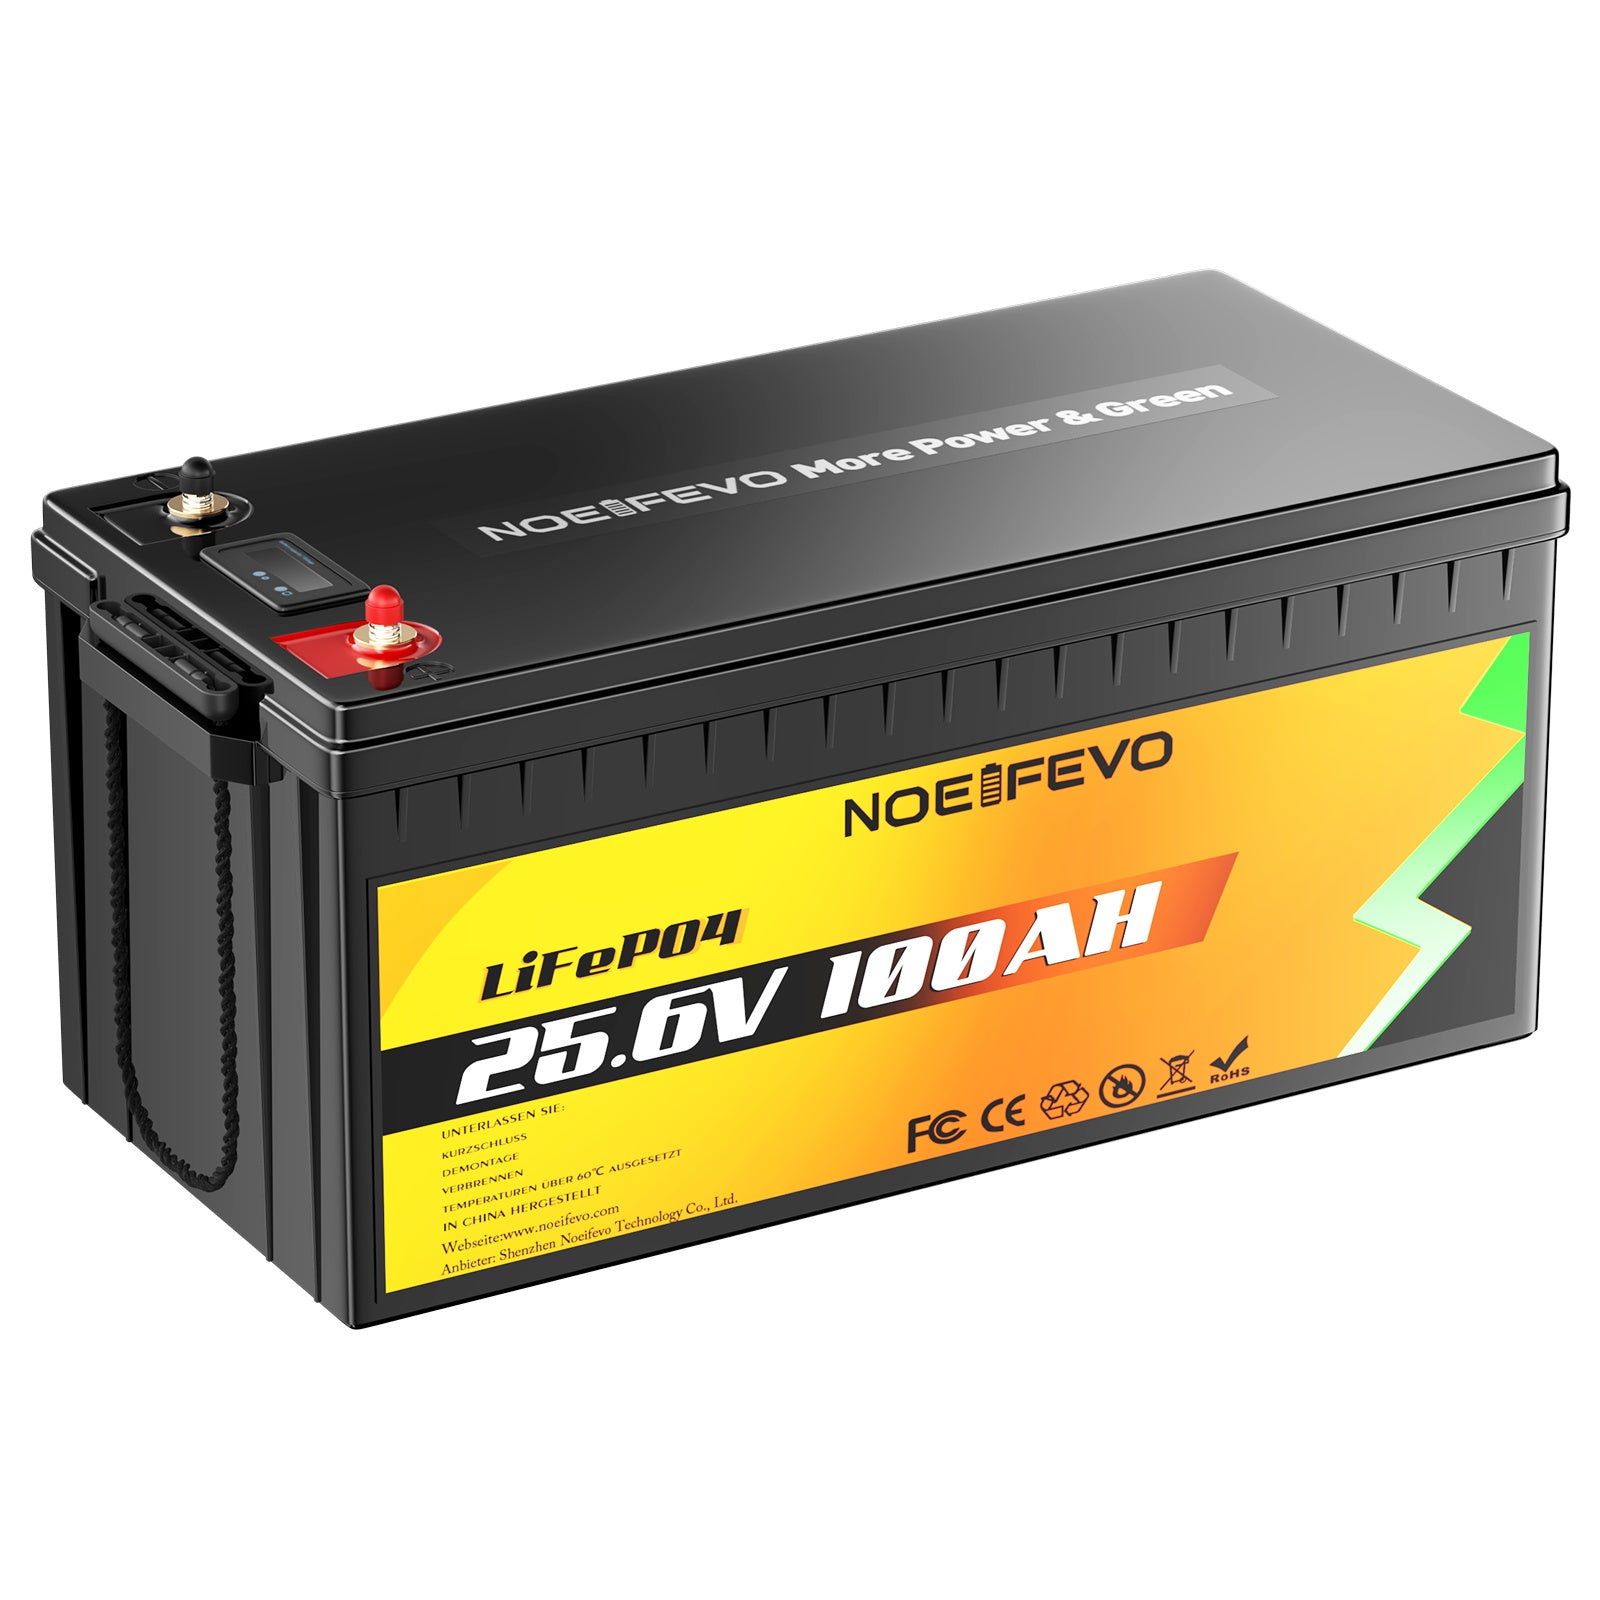 NOEIFEVO F2410 25.6V 100AH Bateria de Fosfato de Lítio LiFePO4 Bateria com 100A BMS